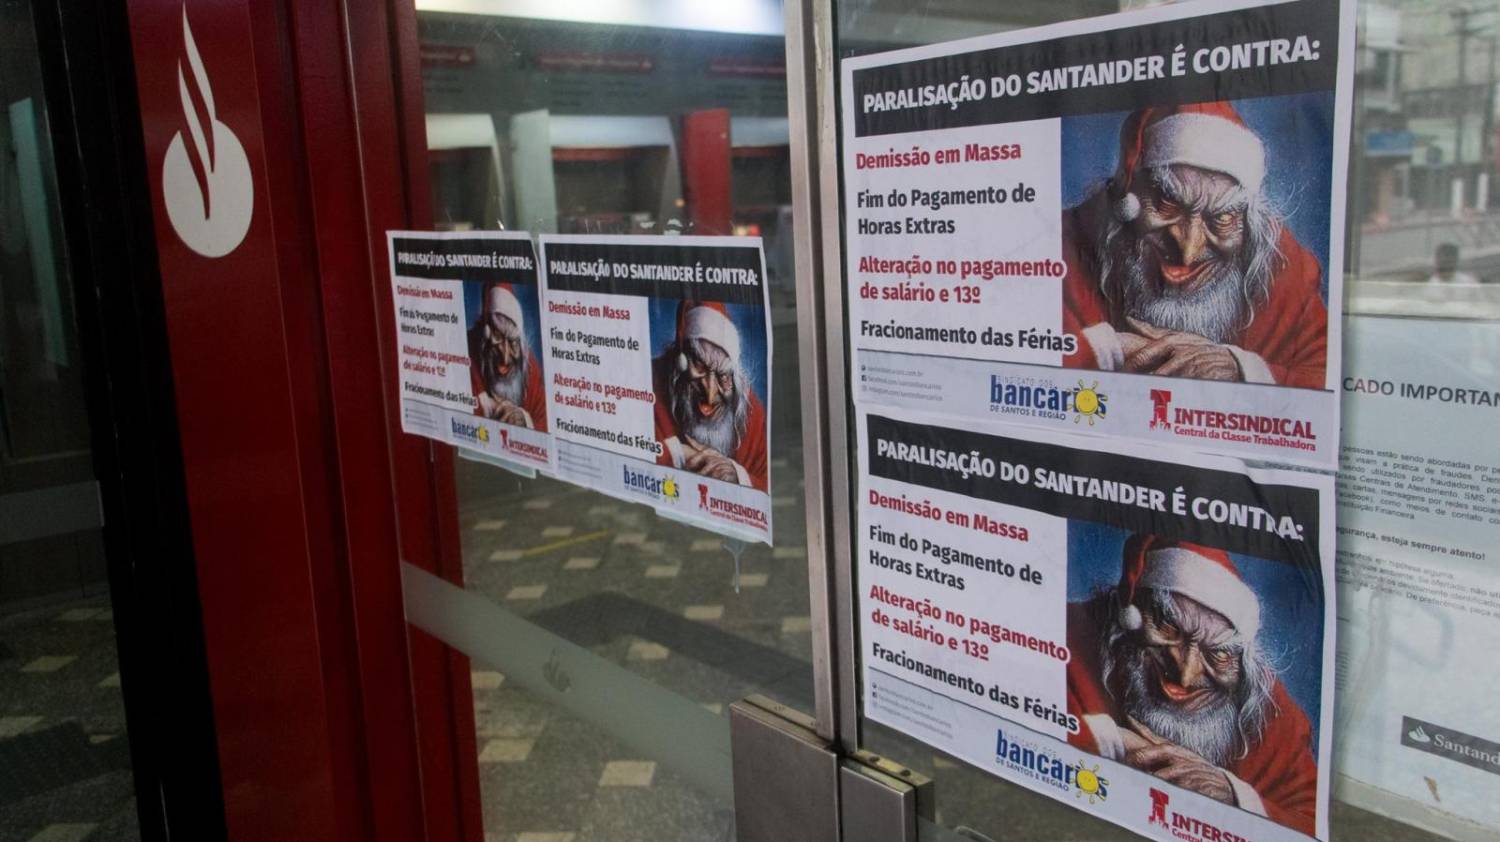 Bancários contestam nota do Santander sobre protestos